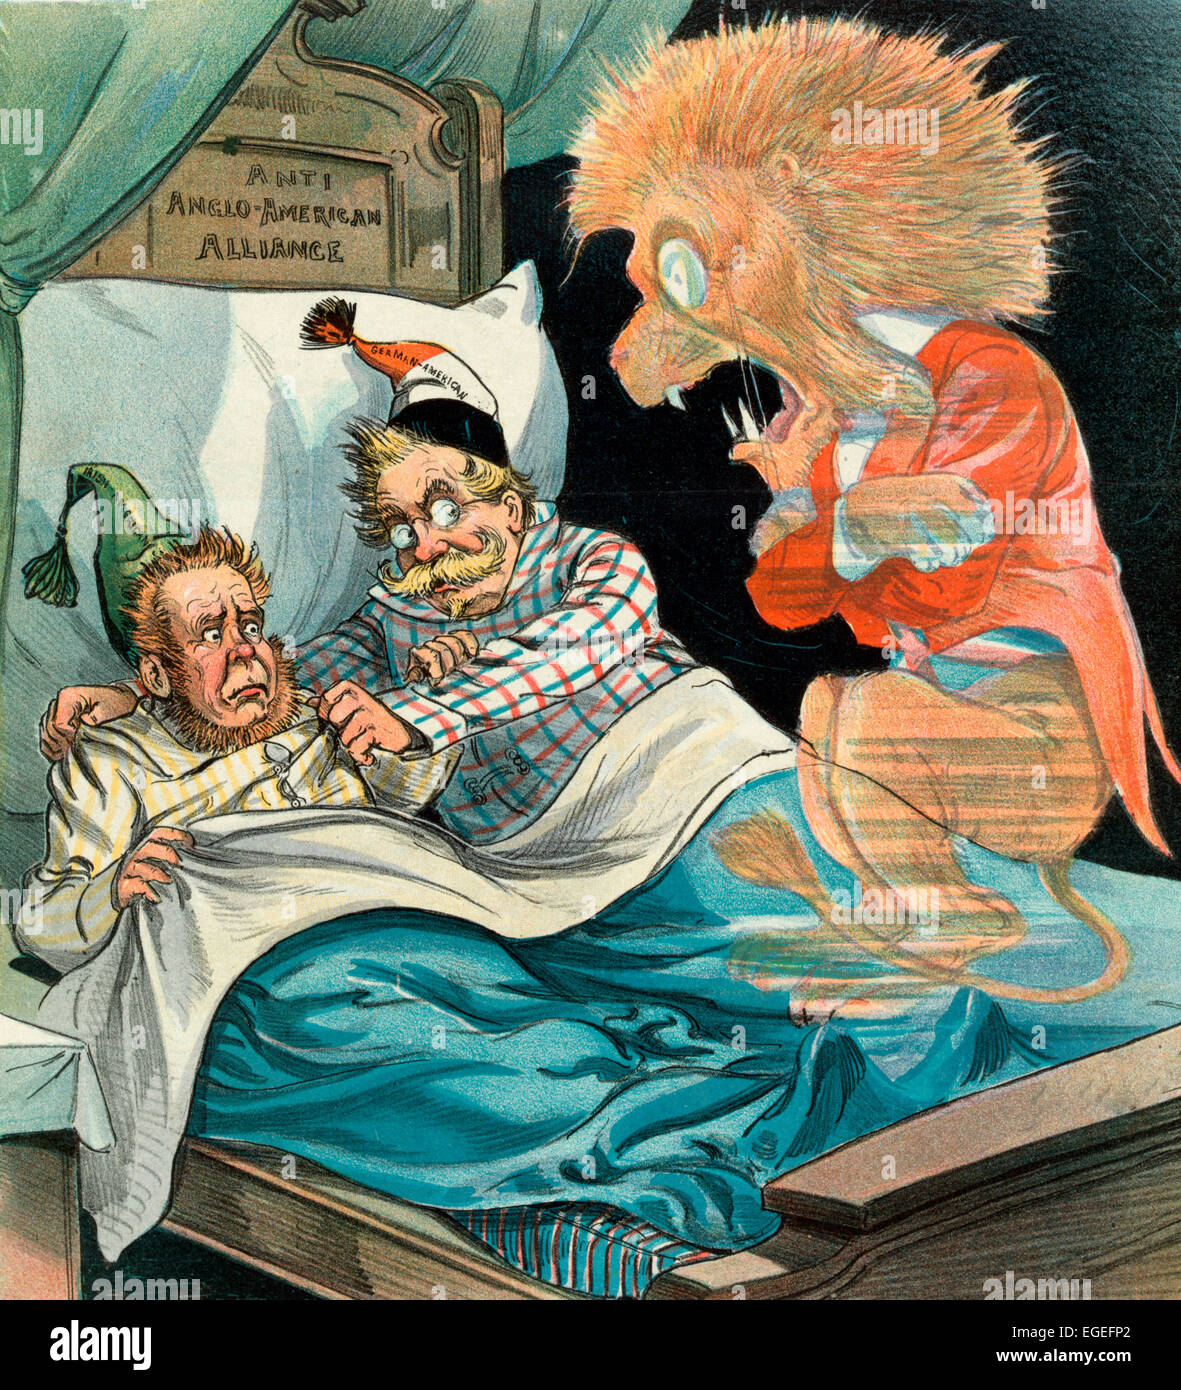 La politica rende bedfellows strani - Il fantasma della British Lion facendo reagire con la paura di trovare un "Irish American' e 'American tedesco' in un letto etichettato 'Anti alleanza anglo-americana". Cartoon politico, 1899 Foto Stock